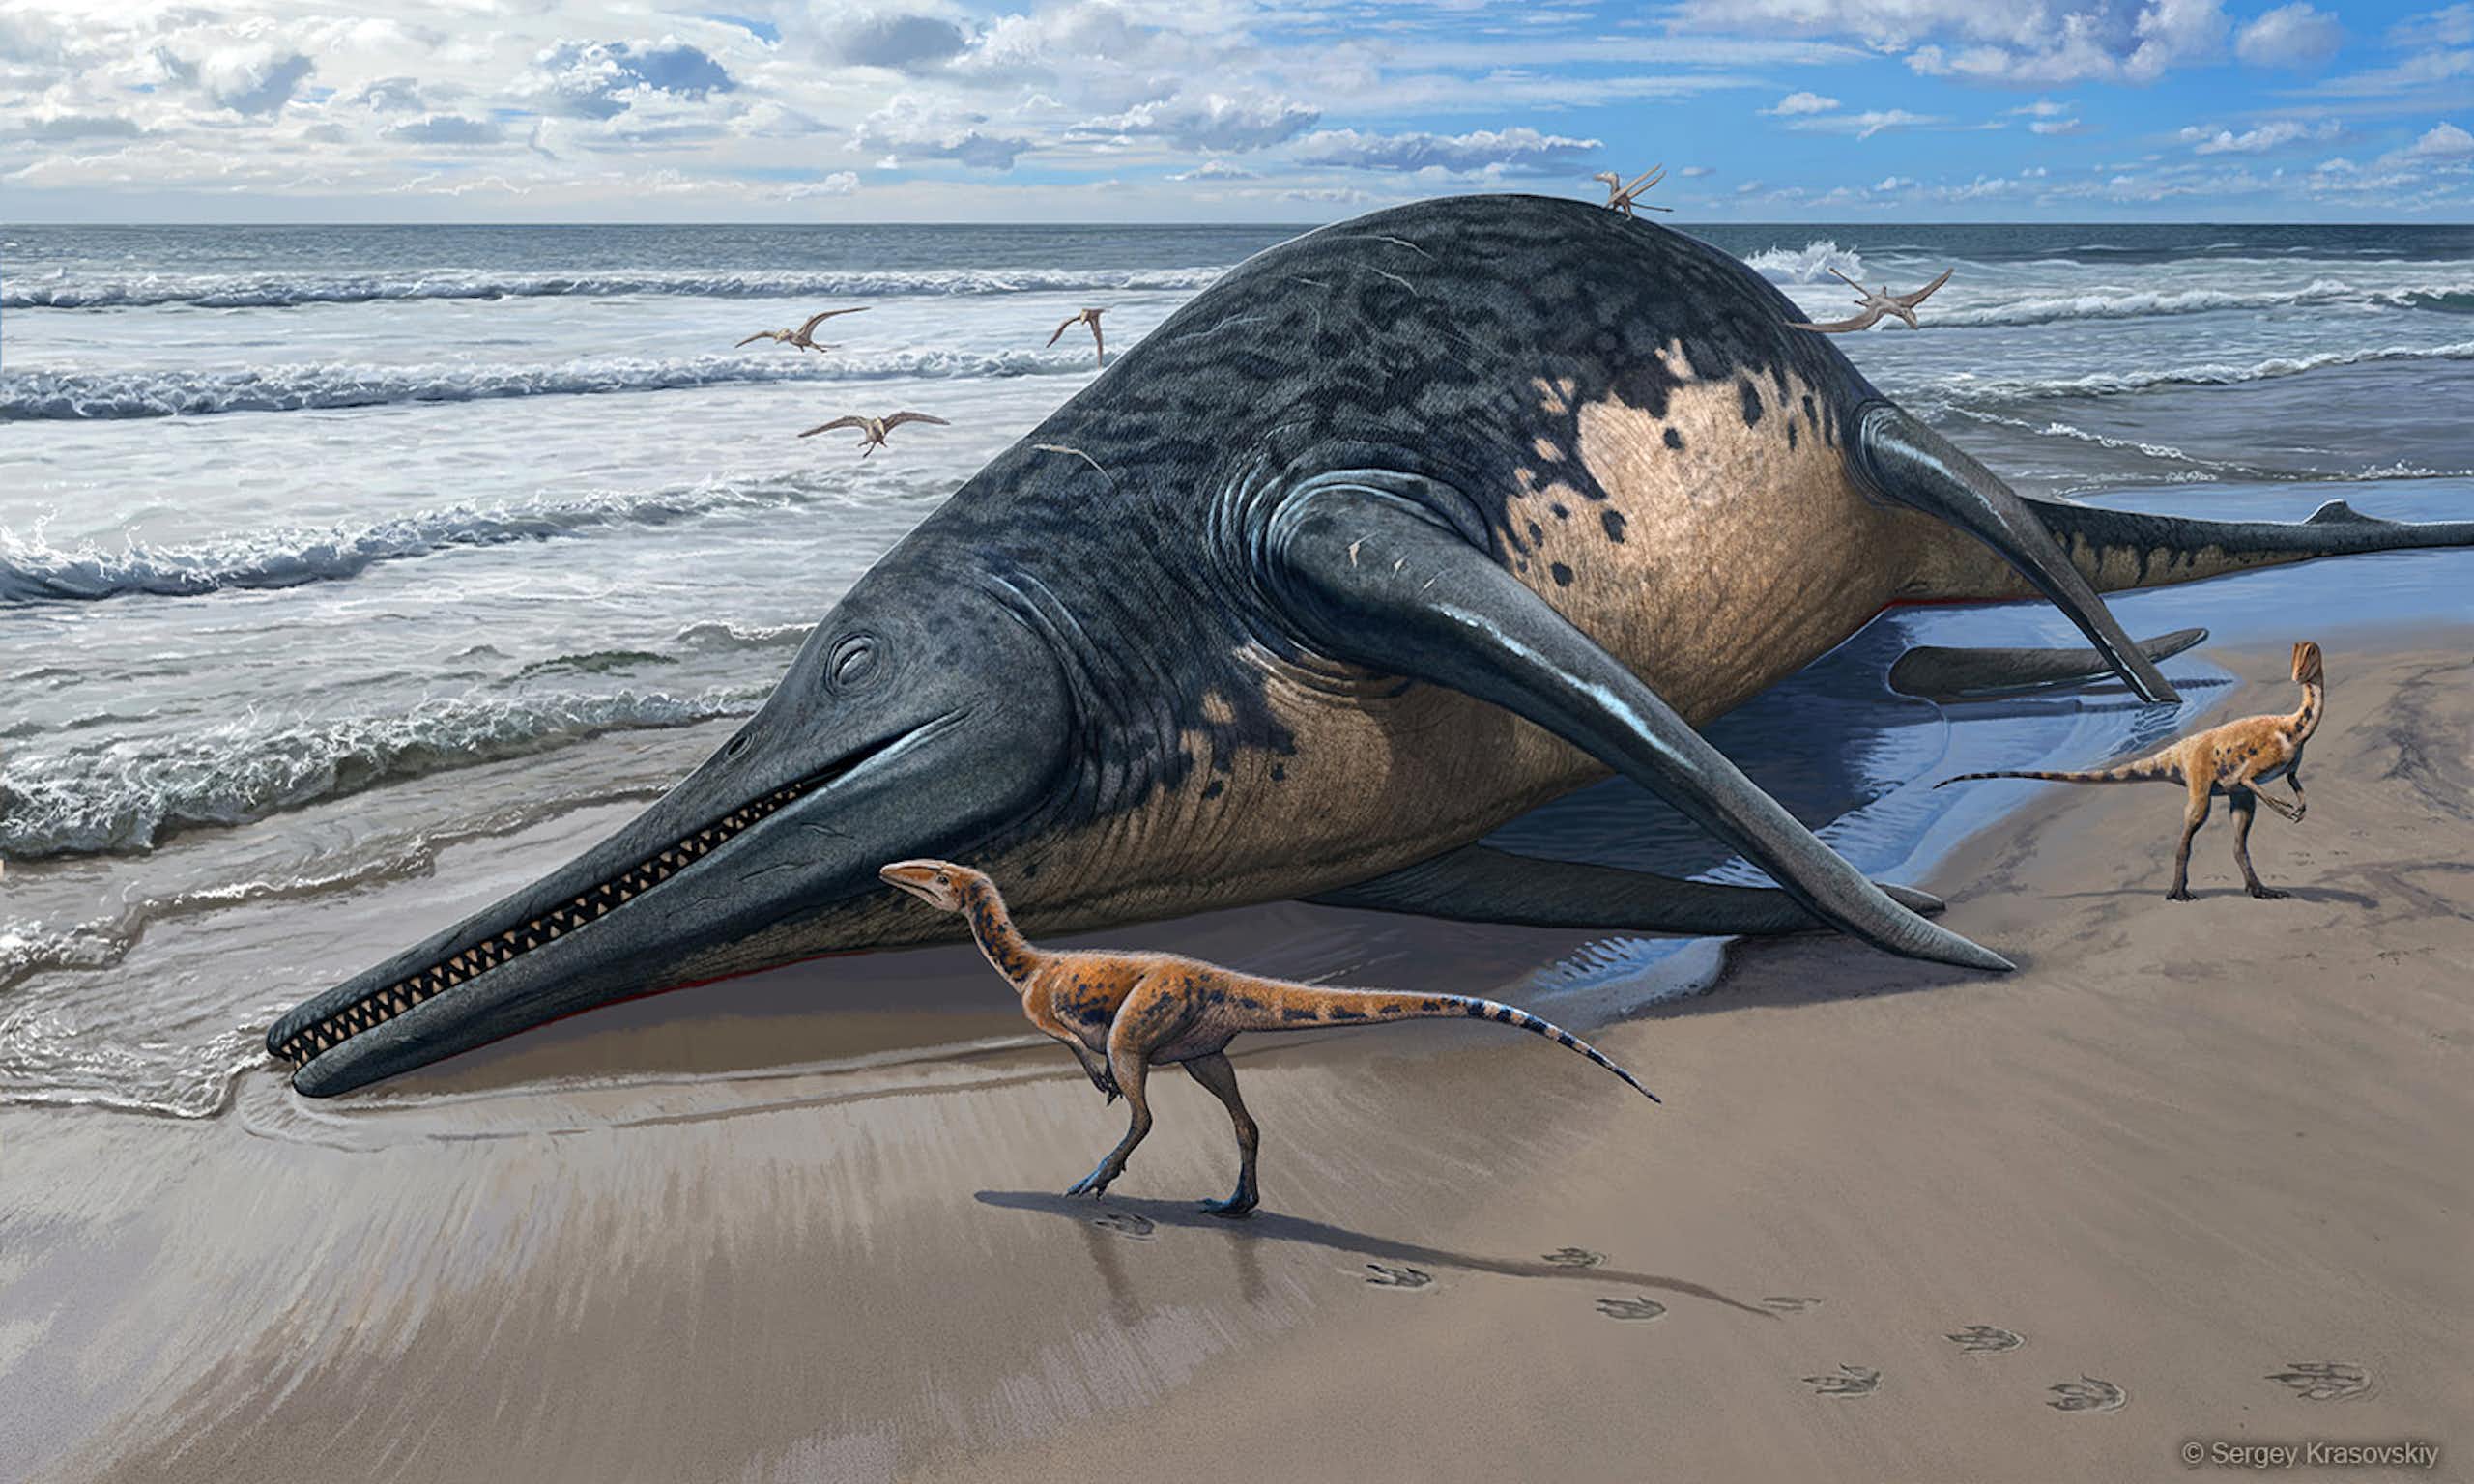 Un reptile marin géant sur la plage avec deux reptiles terrestres plus petits.